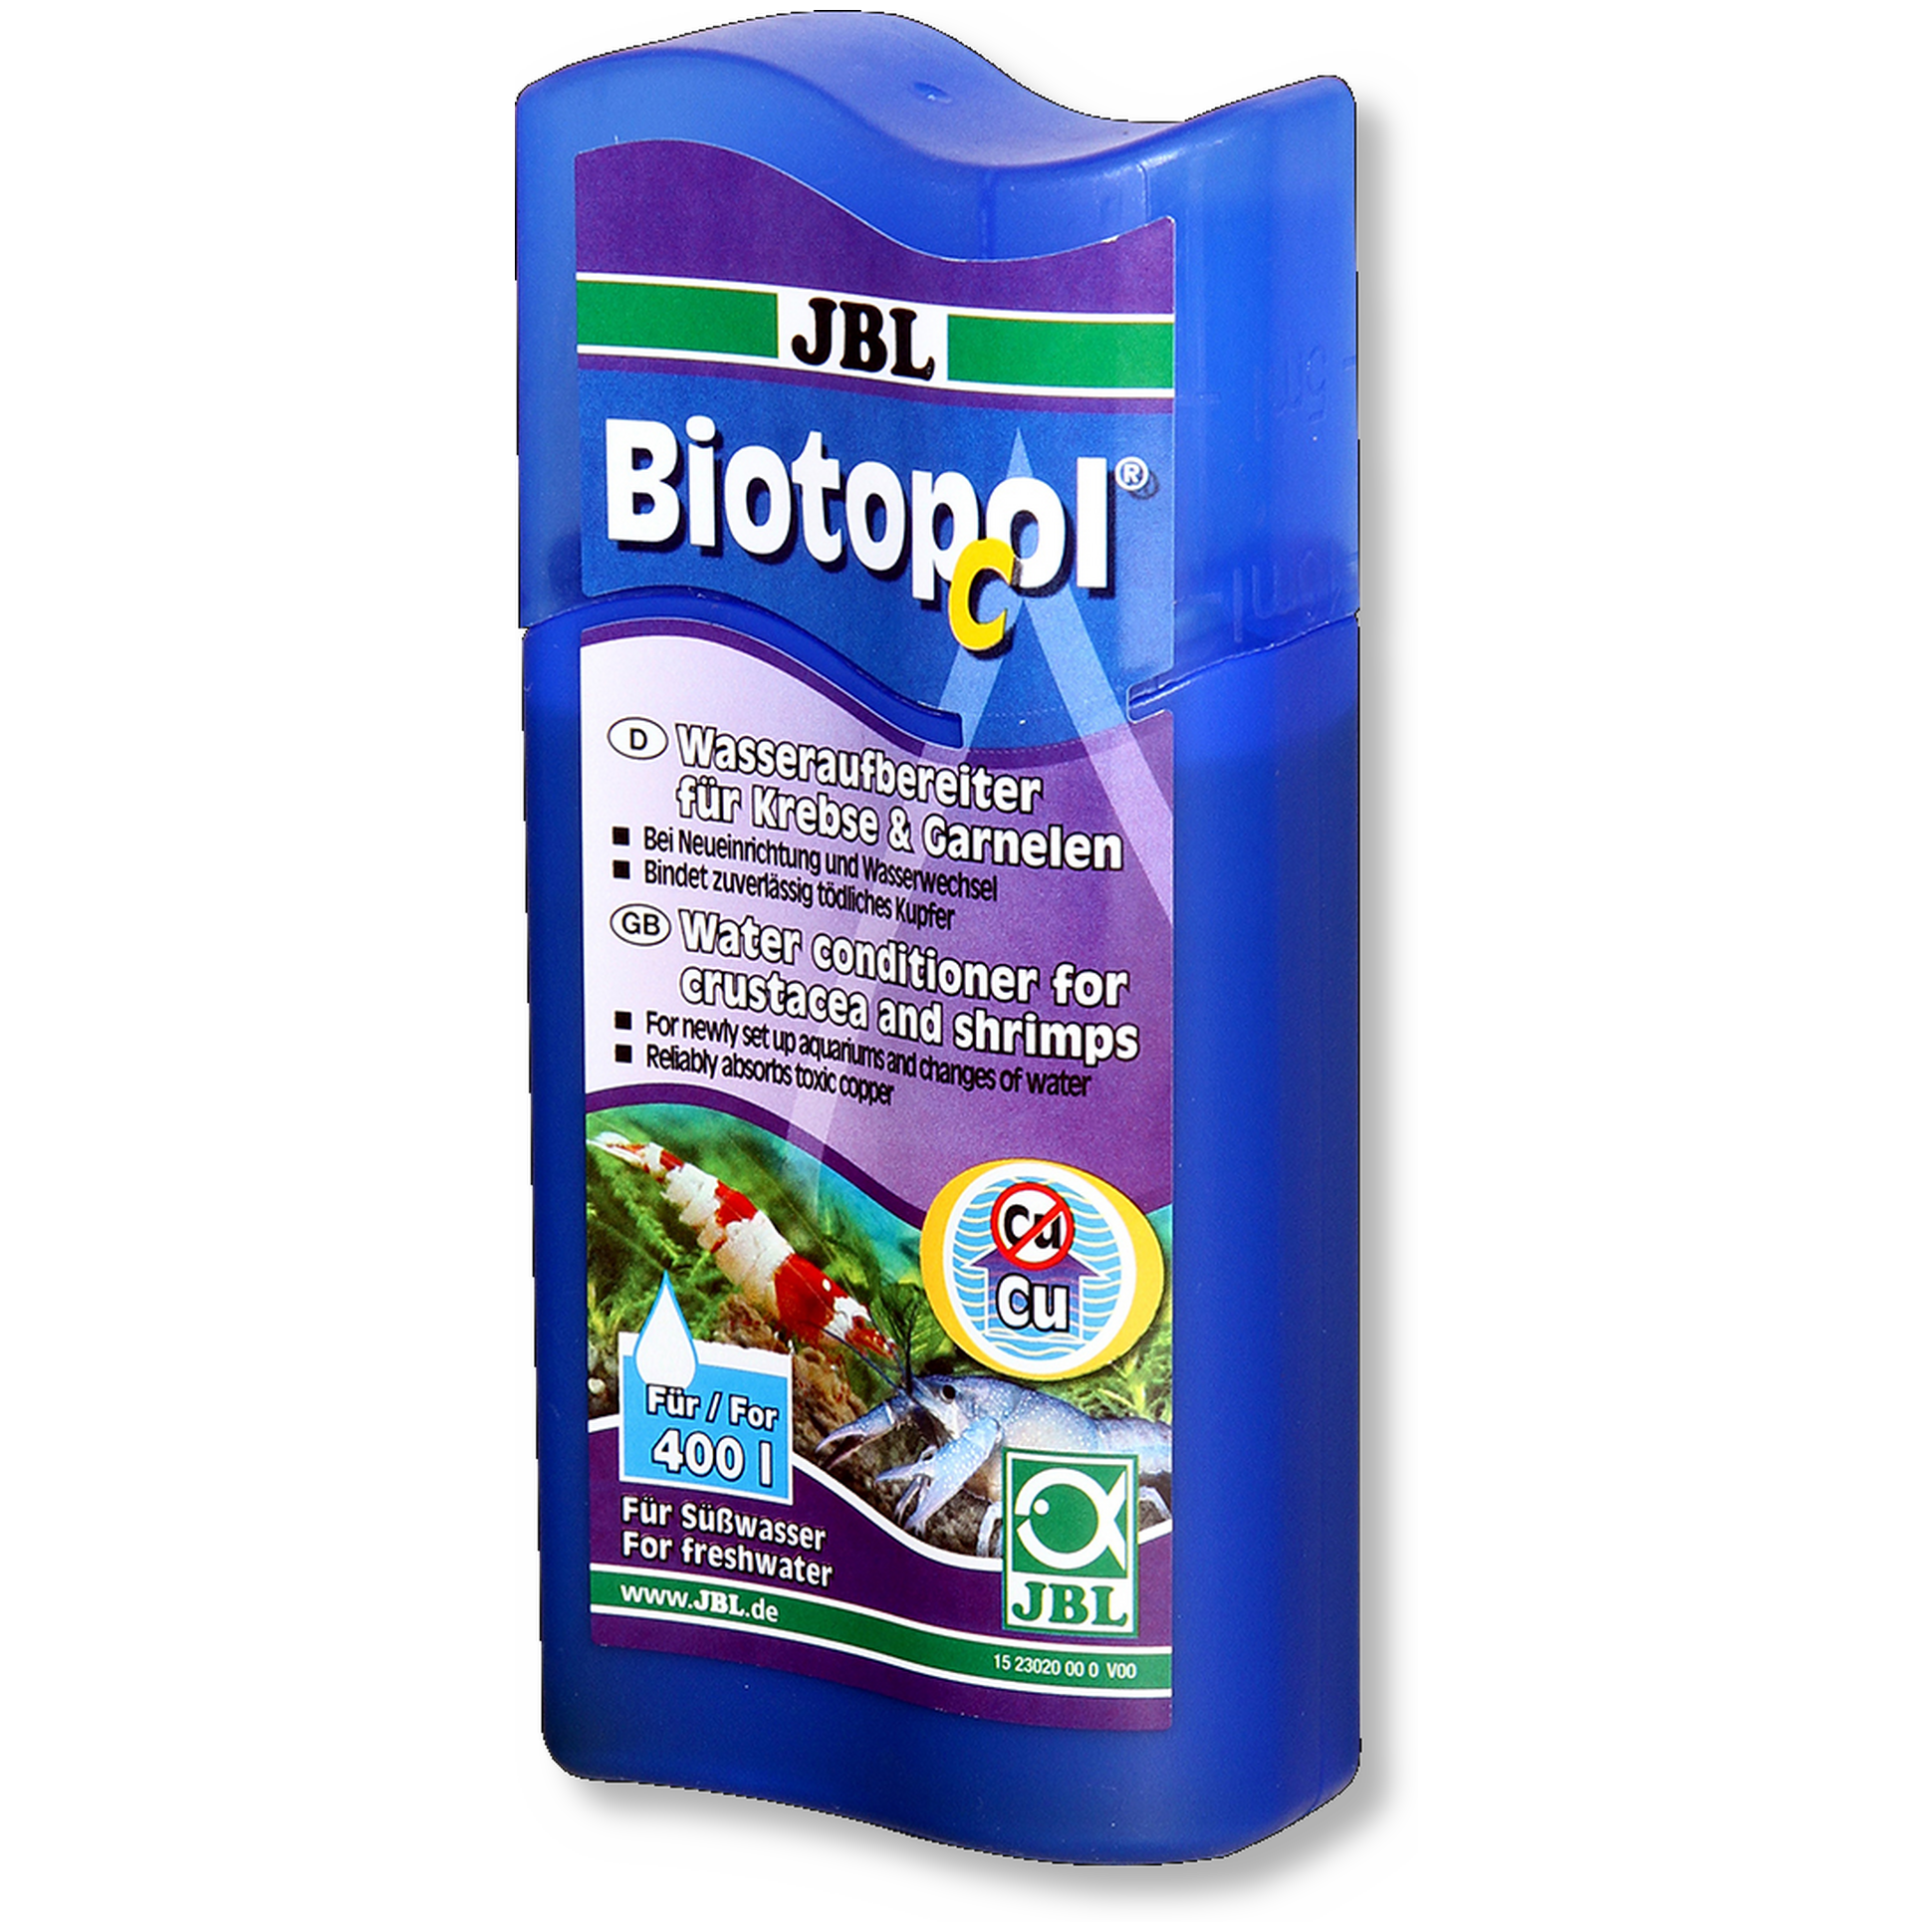 JBL Biotopol C Wasseraufbereiter für Krebse und Garnelen